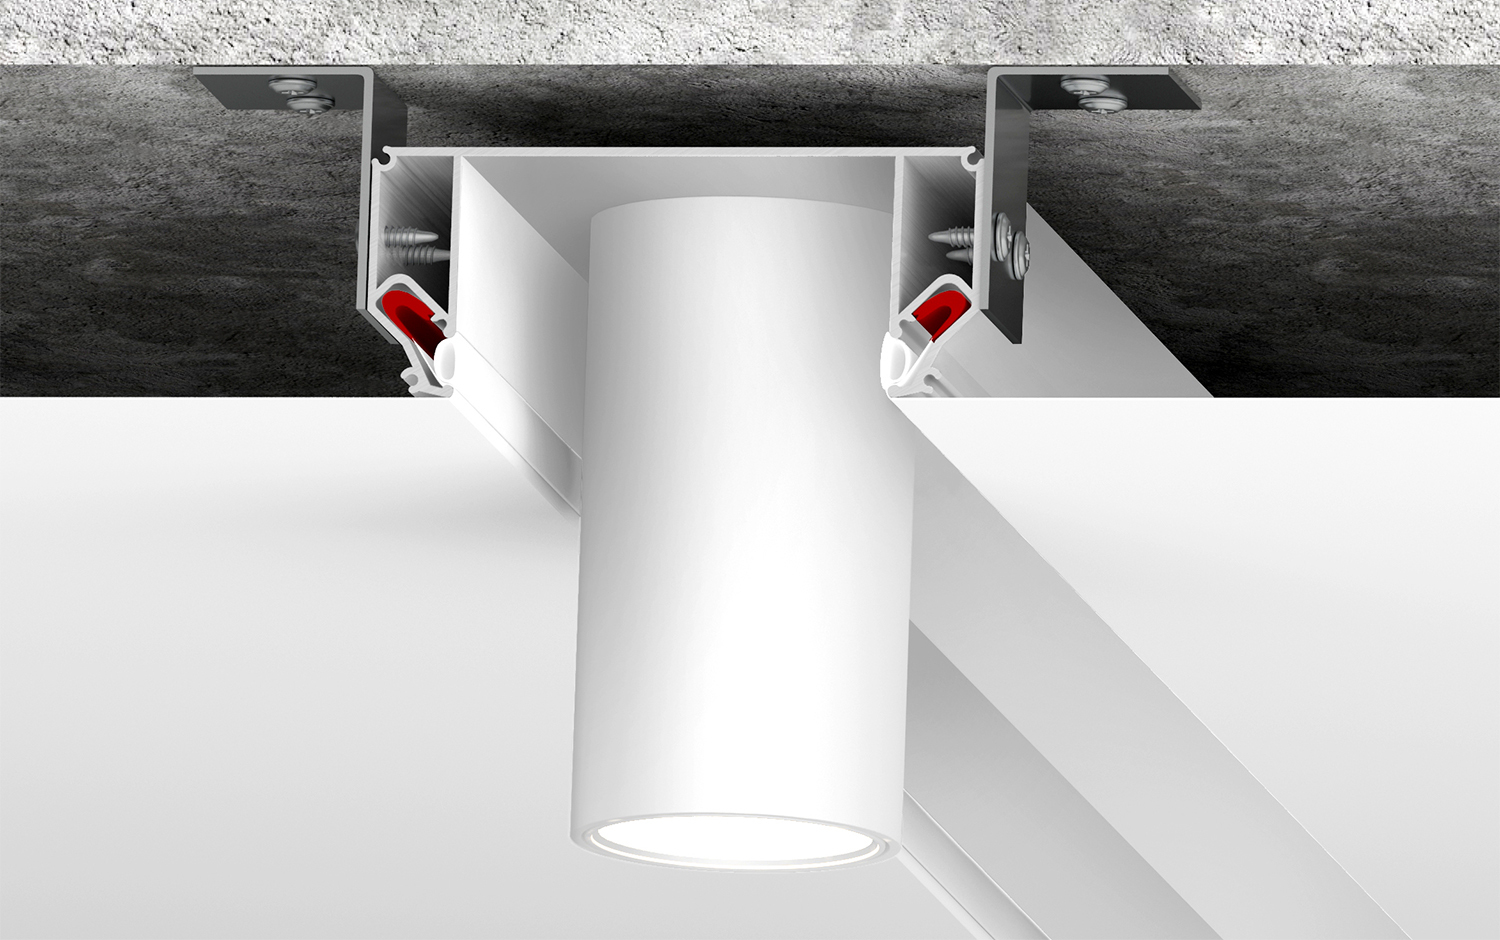 DK5850-WH Профиль Flod для создания декоративных ниш в натяжном потолке, алюминий, белый